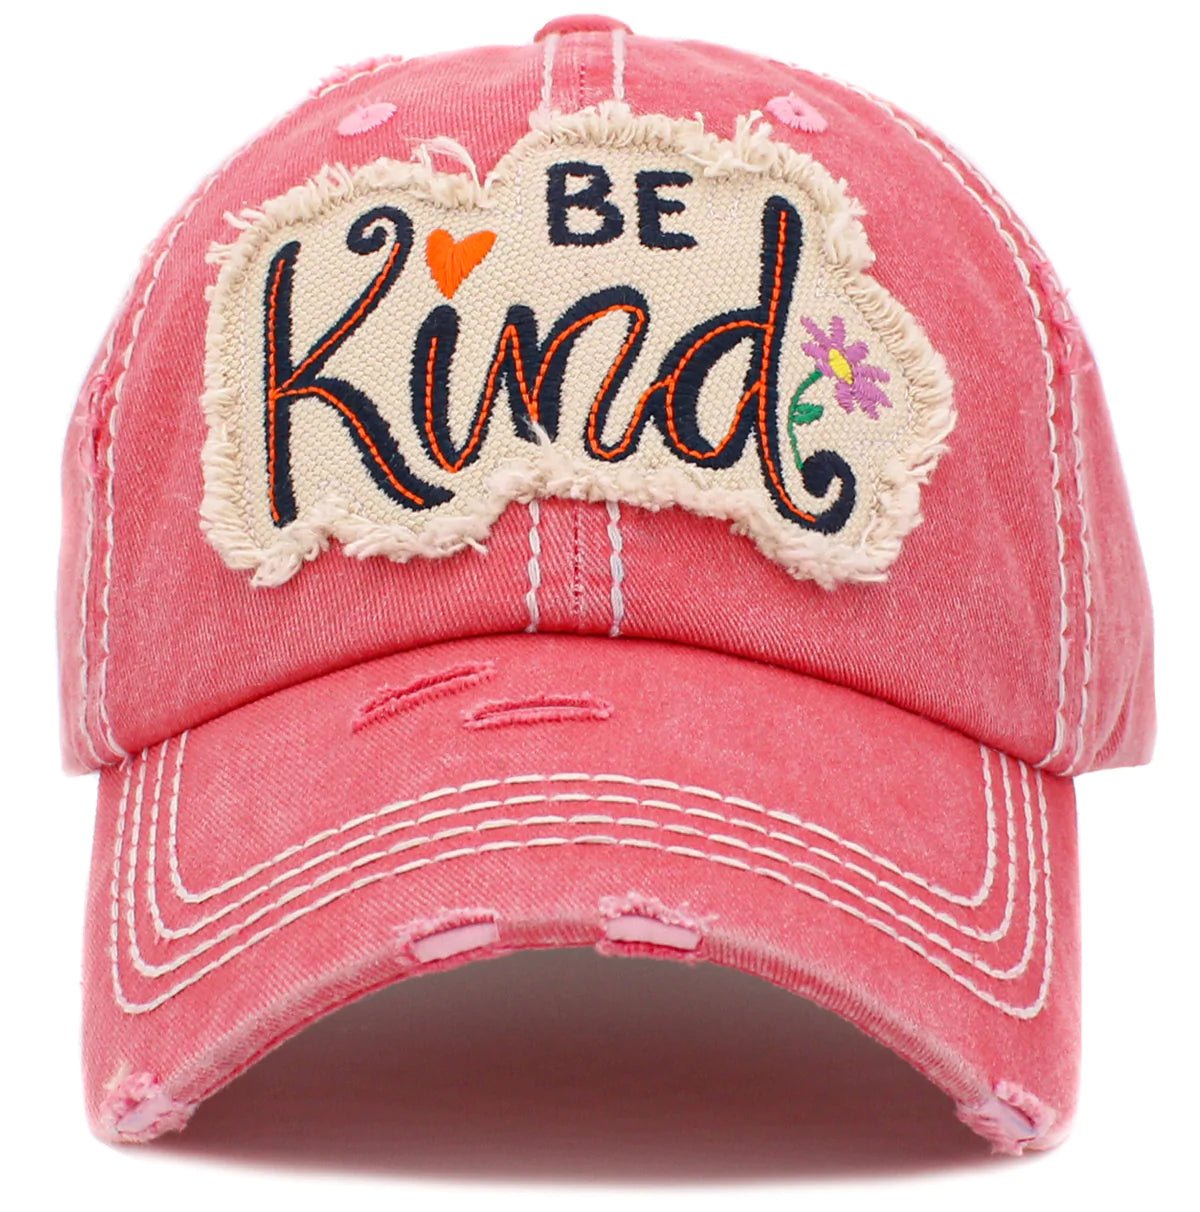 KBV1422 "Be Kind" Vintage Washed Ball Cap - Honeytote